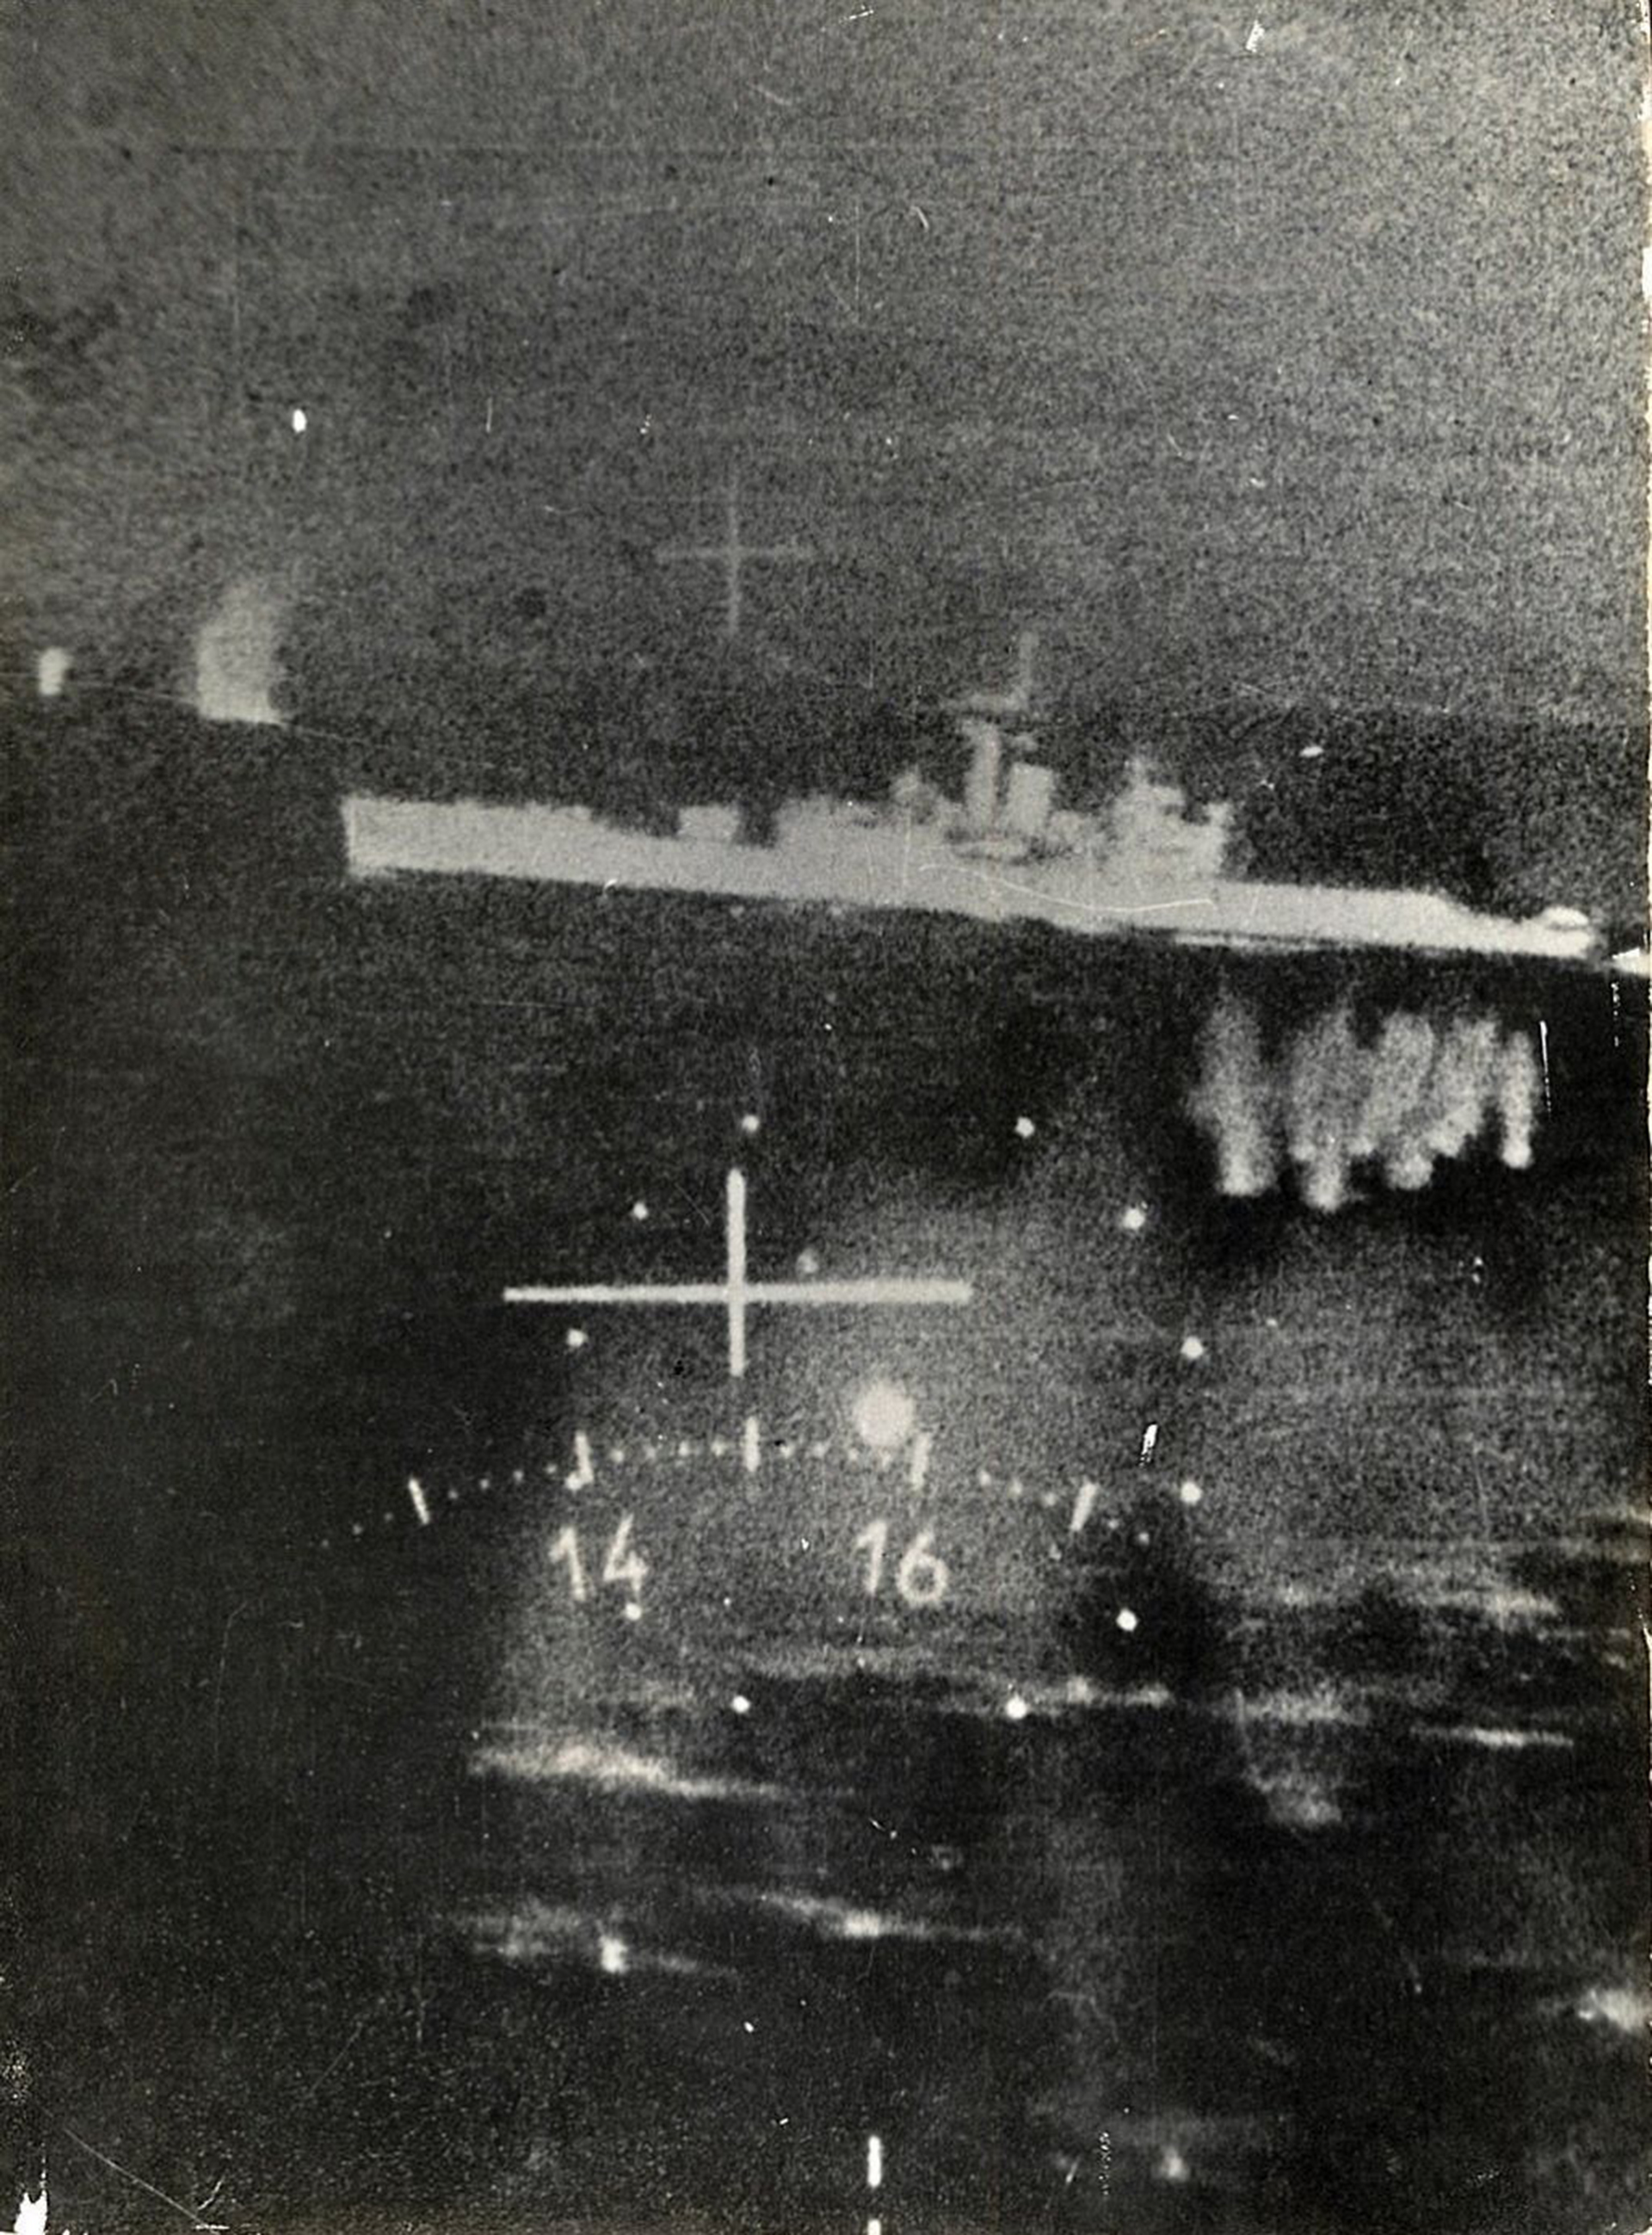 El 21 de mayo de 1982, una escuadrilla de aviones Mirage M5 Dagger de la Fuerza Aérea bombardeó y puso fuera de combate a la fragata HMS Ardent. Foto: Gentileza Mir Gonzalez.